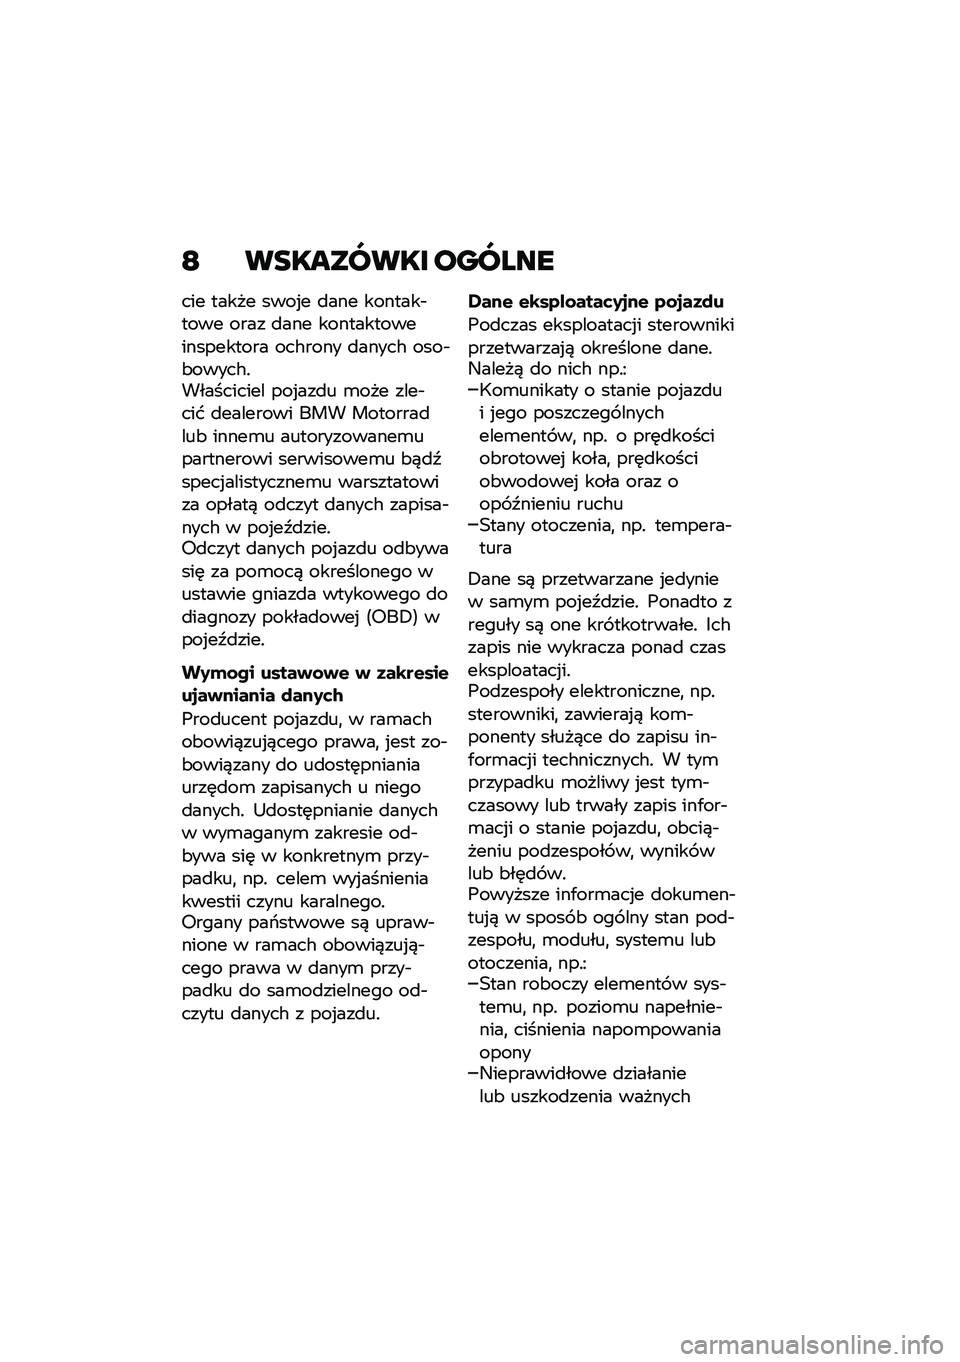 BMW MOTORRAD R NINE T URVAN G/S 2021  Instrukcja obsługi (in Polish) �E ��������� ������
��� ����� ����%� �
��� �������$���� ���� �
��� �������������������� ���#���� �
�����# ����$�&����